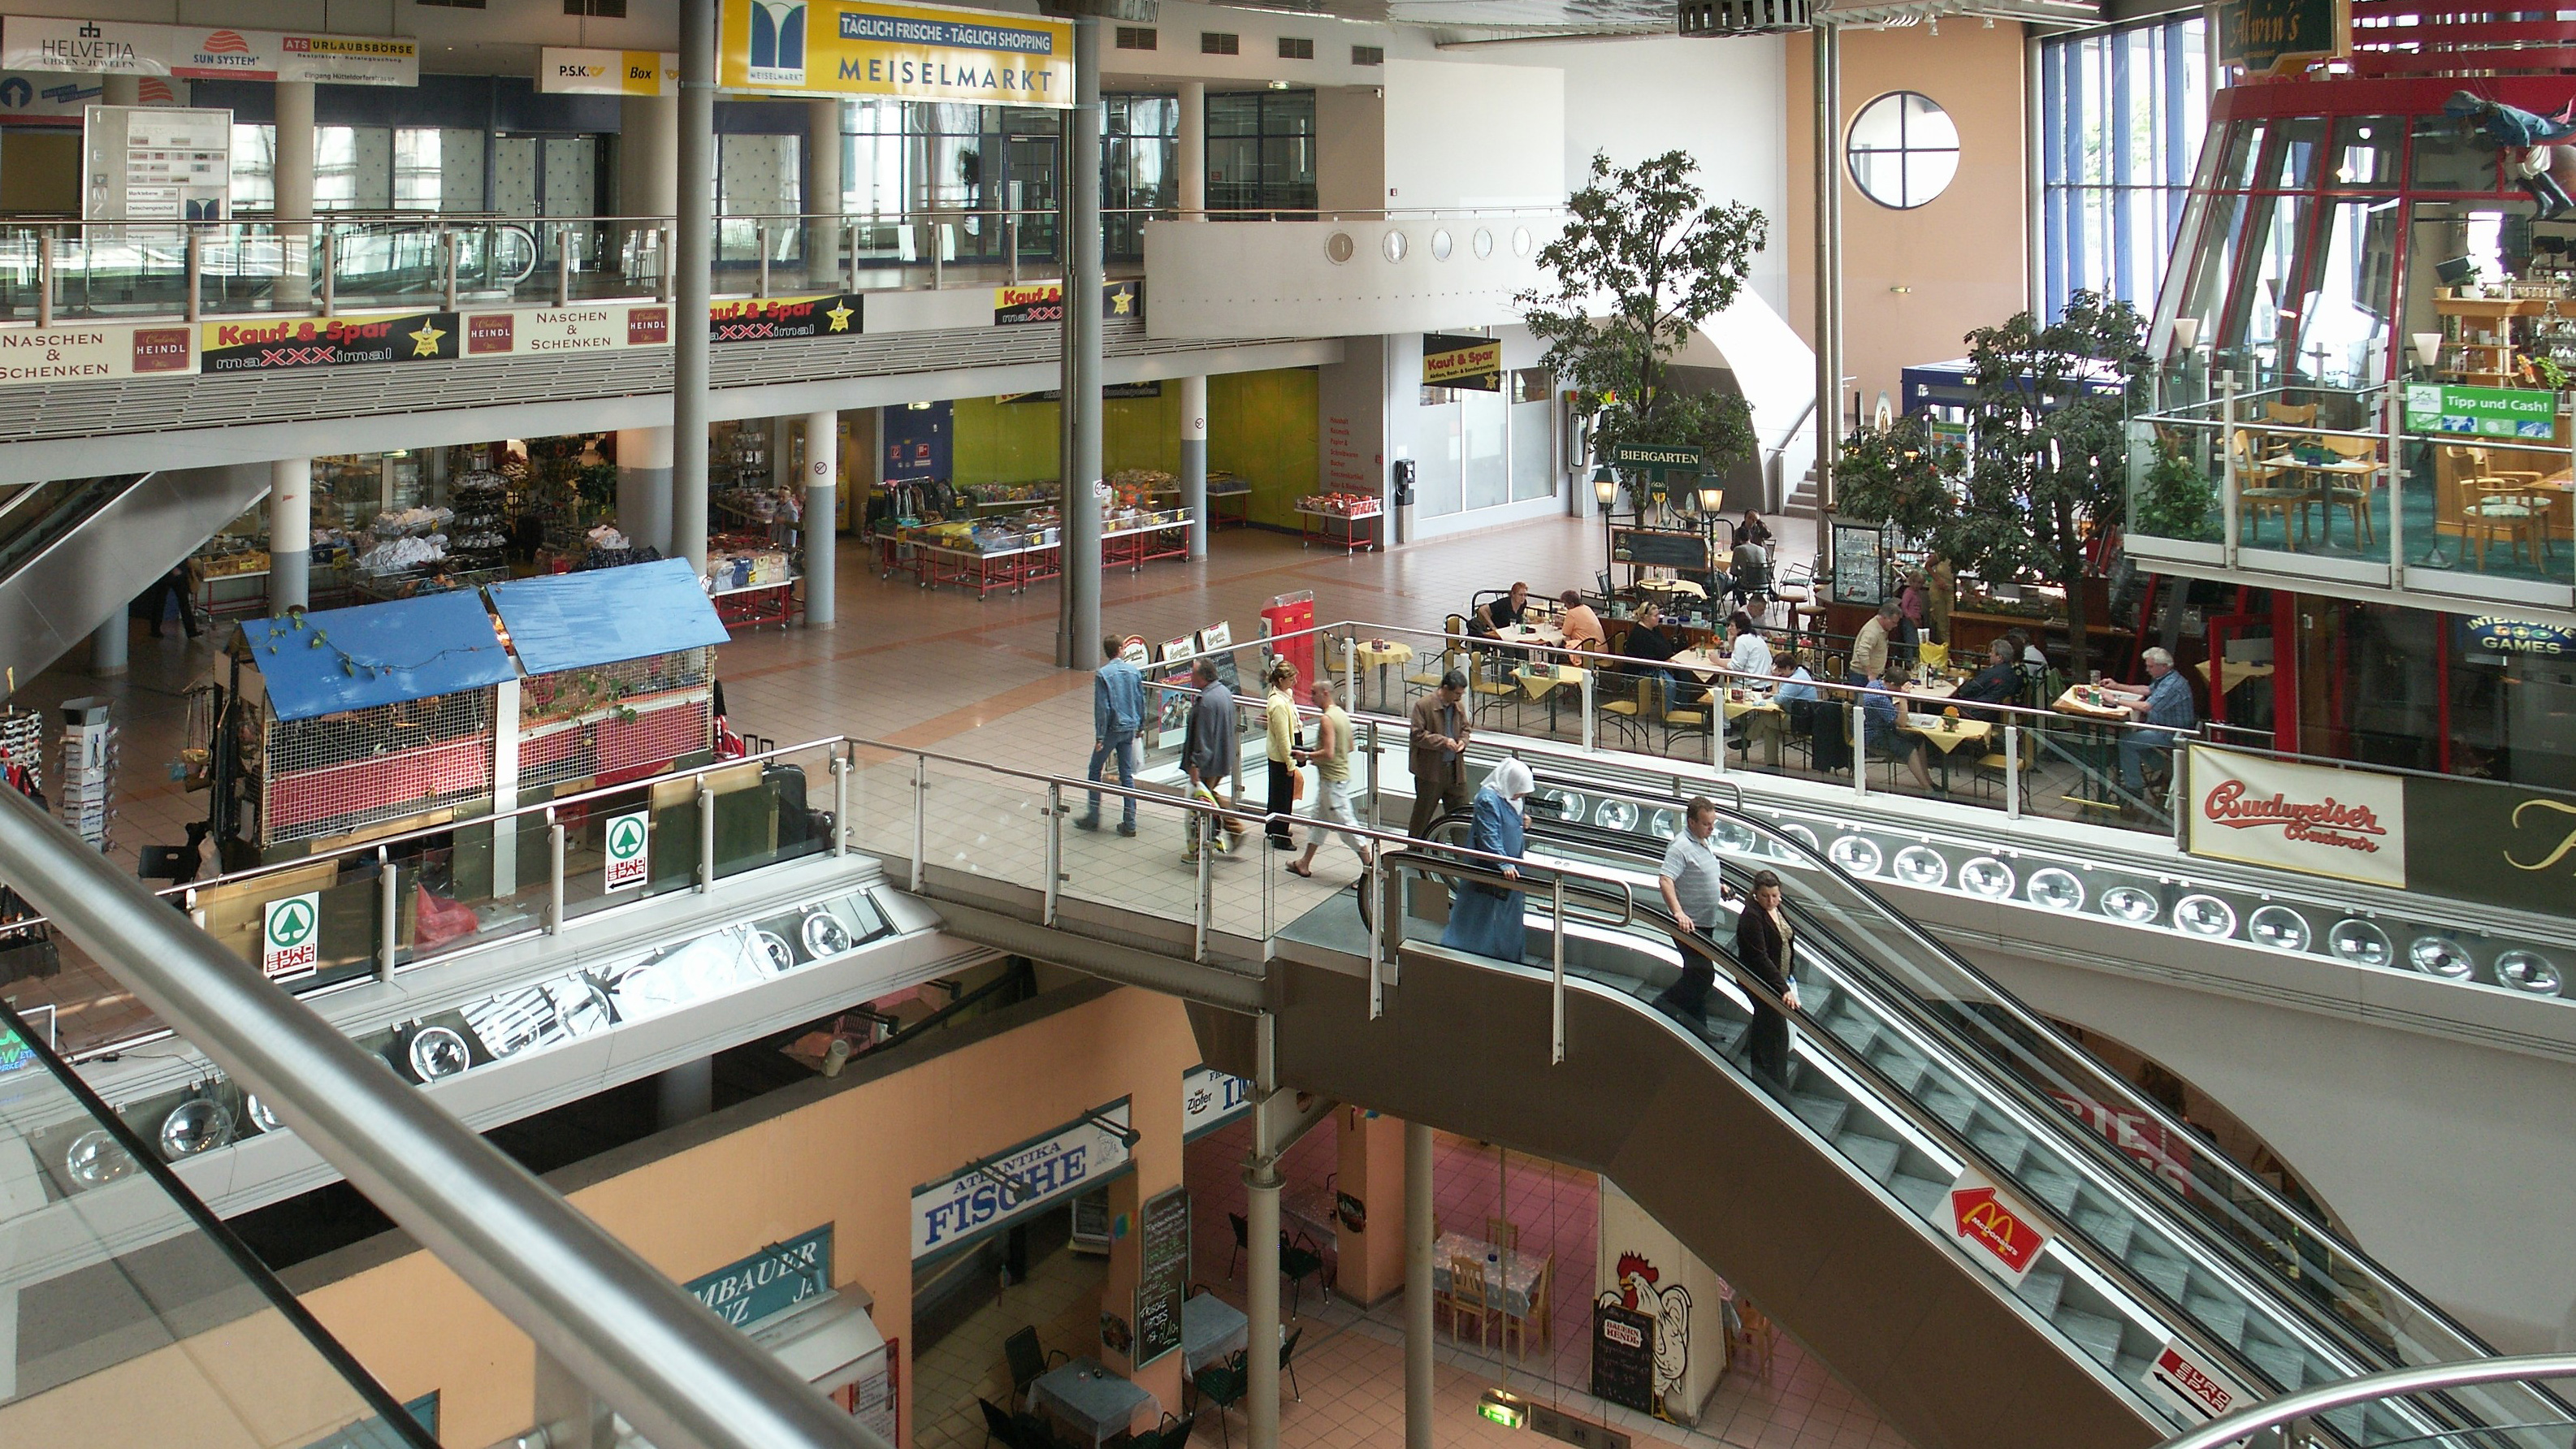 Bild von überdachtem Meiselmarkt: oben Shoppingcenter, unten Markt mit Gemüse und Co.